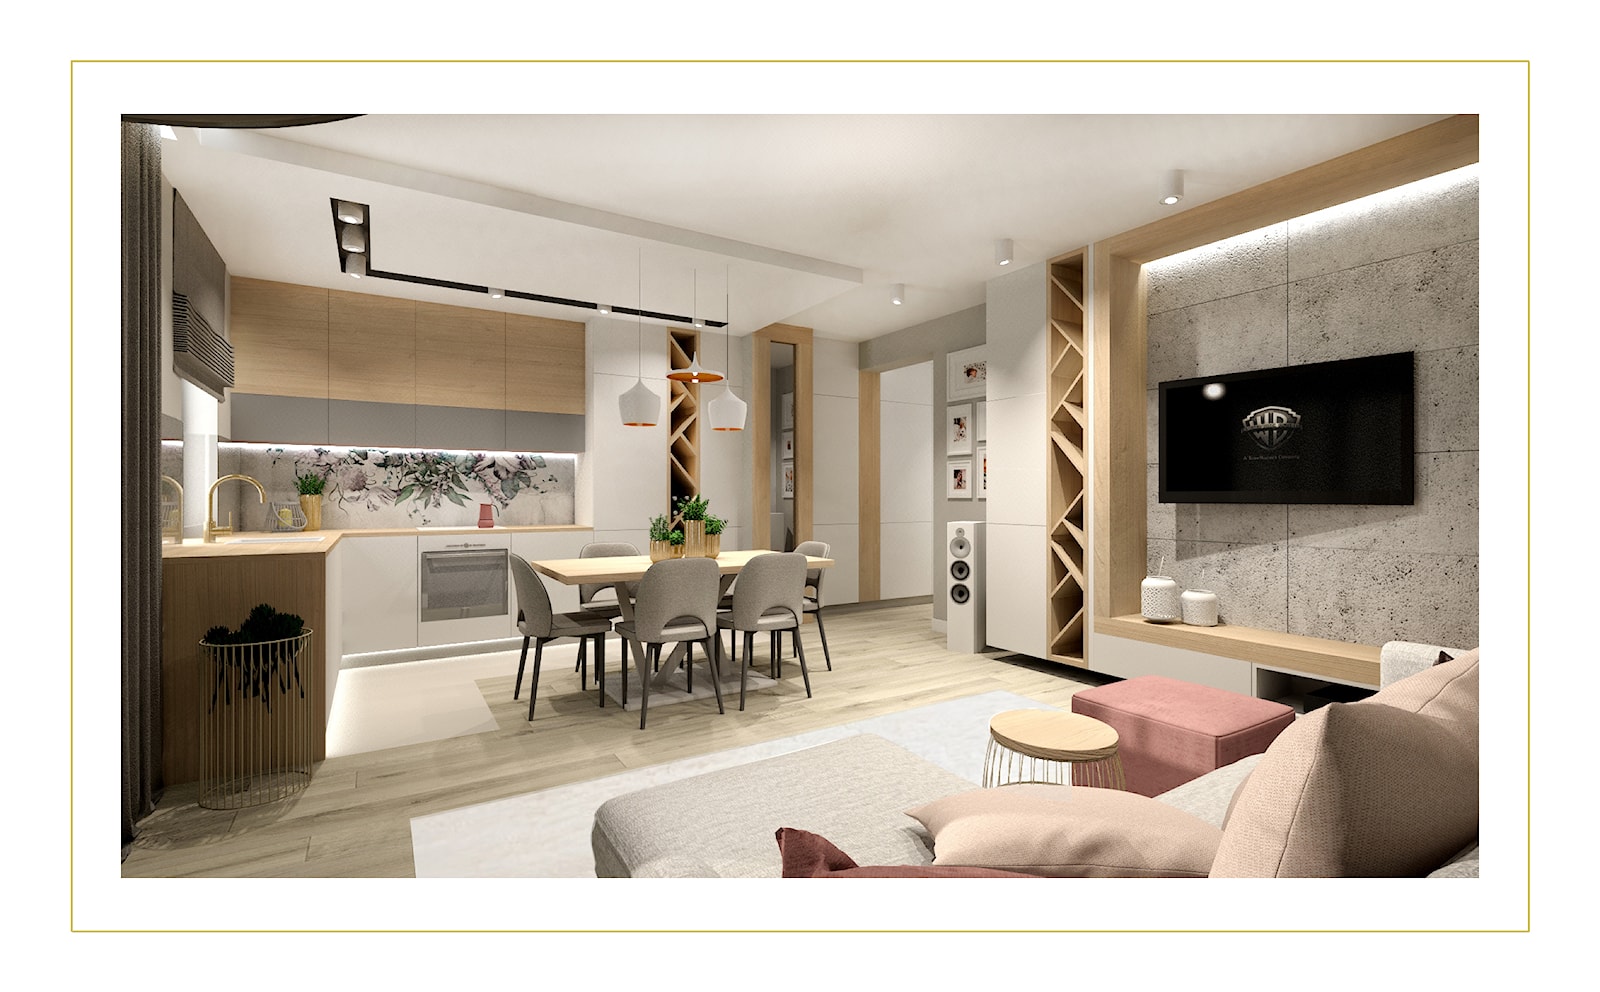 Przytulne mieszkanie z aneksem kuchennym - zdjęcie od DESIGN HOUSE - Homebook